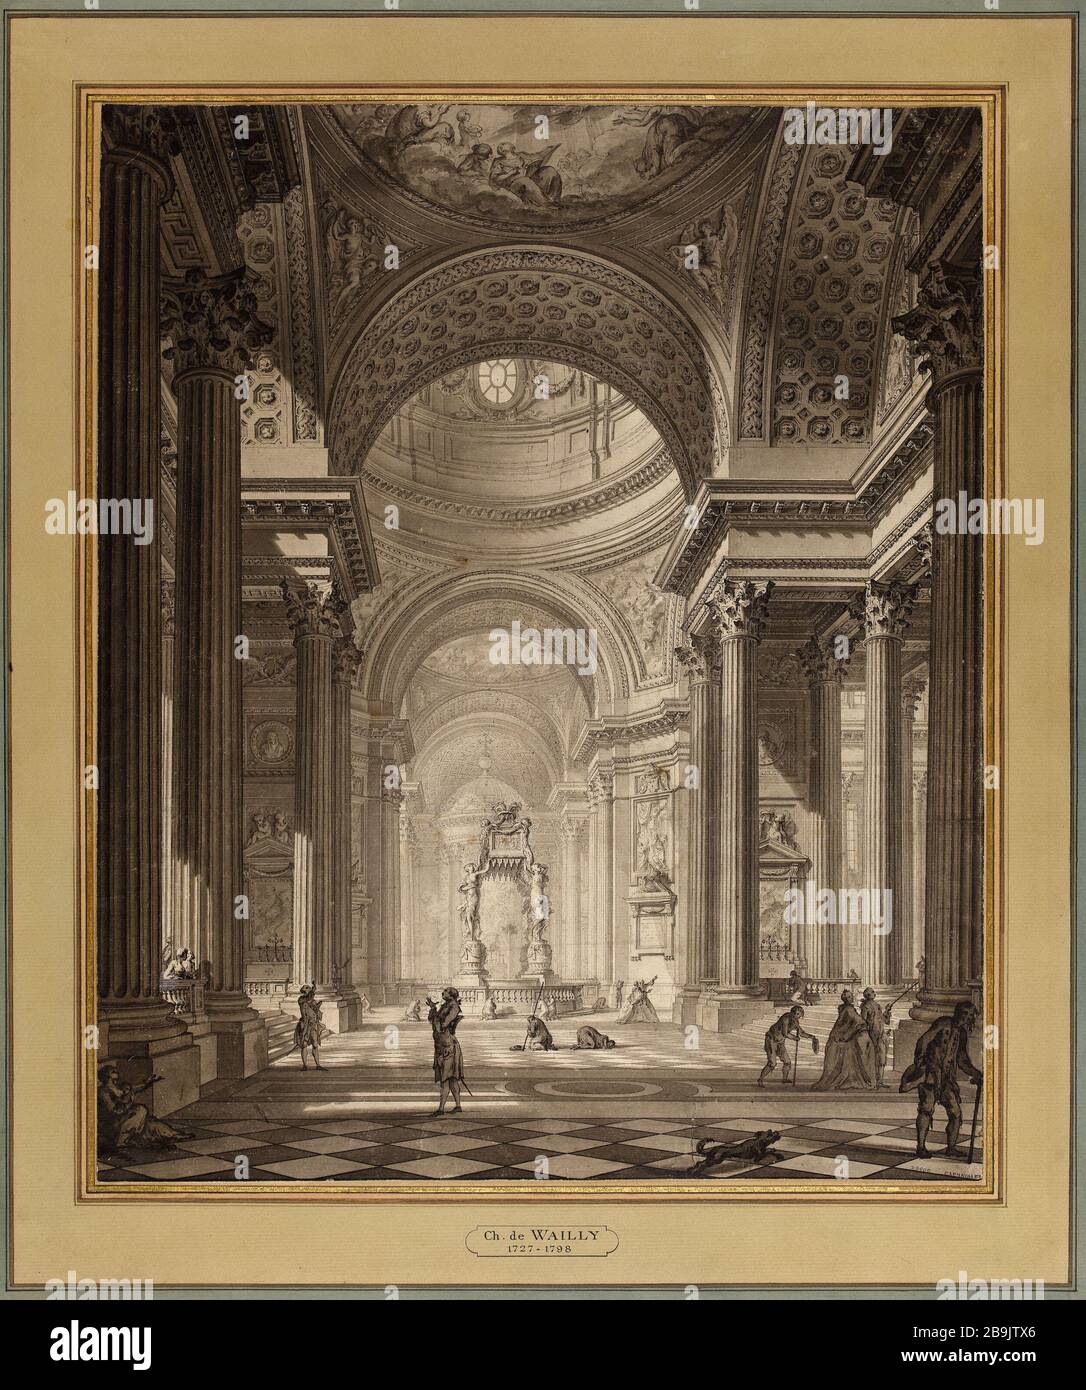 Inside the church Sainte Genevieve Charles de Wailly (1729-1798). 'Intérieur de l'église Sainte Geneviève'. Plume, lavis d'encre de chine. Paris, musée Carnavalet. Stock Photo